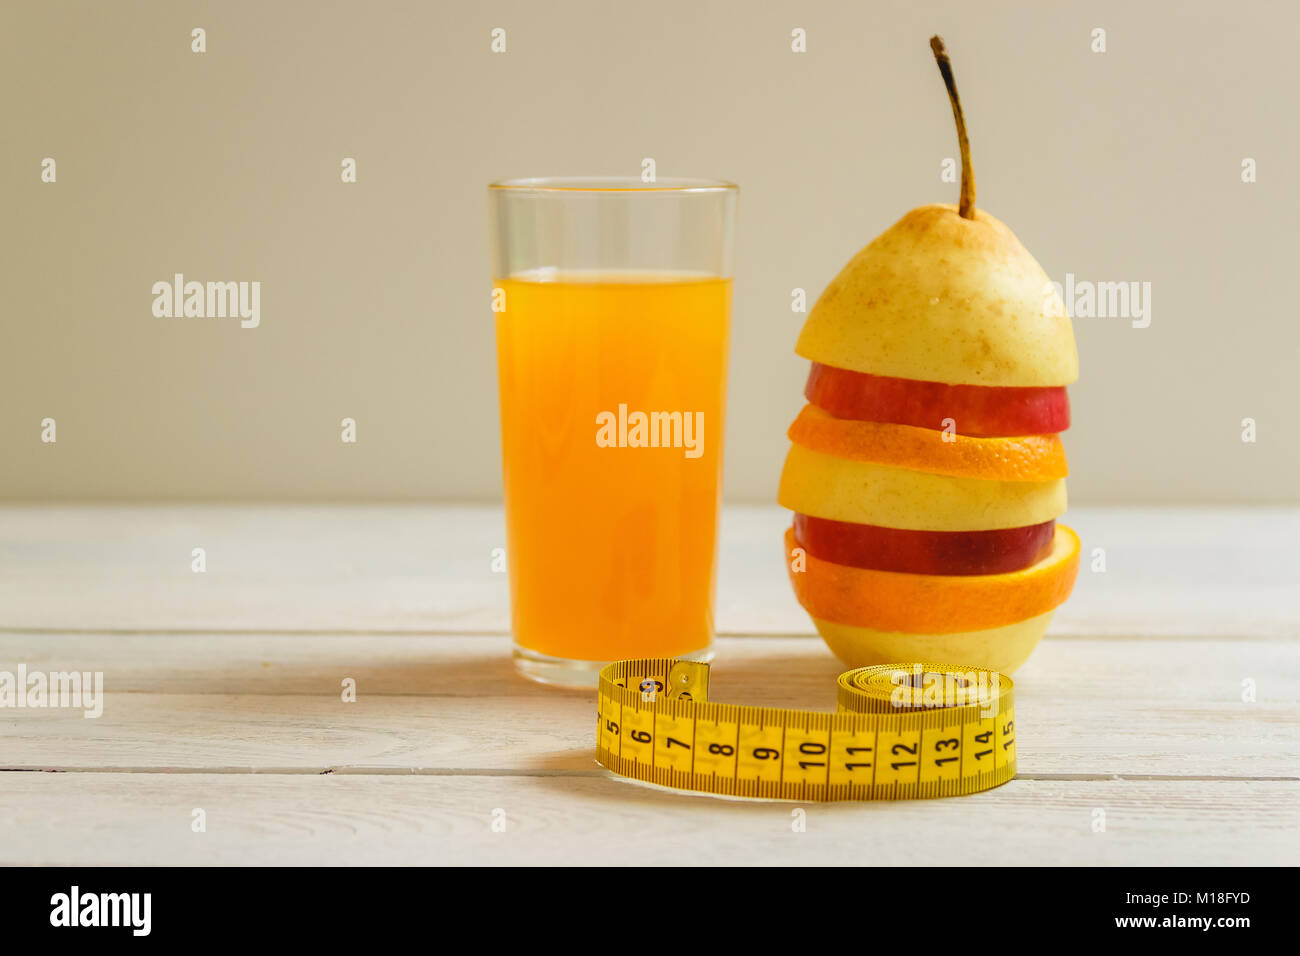 Ruban de mesure et de fruits frais sur la table en bois. Mode de vie sain régime alimentaire avec des fruits frais. Banque D'Images